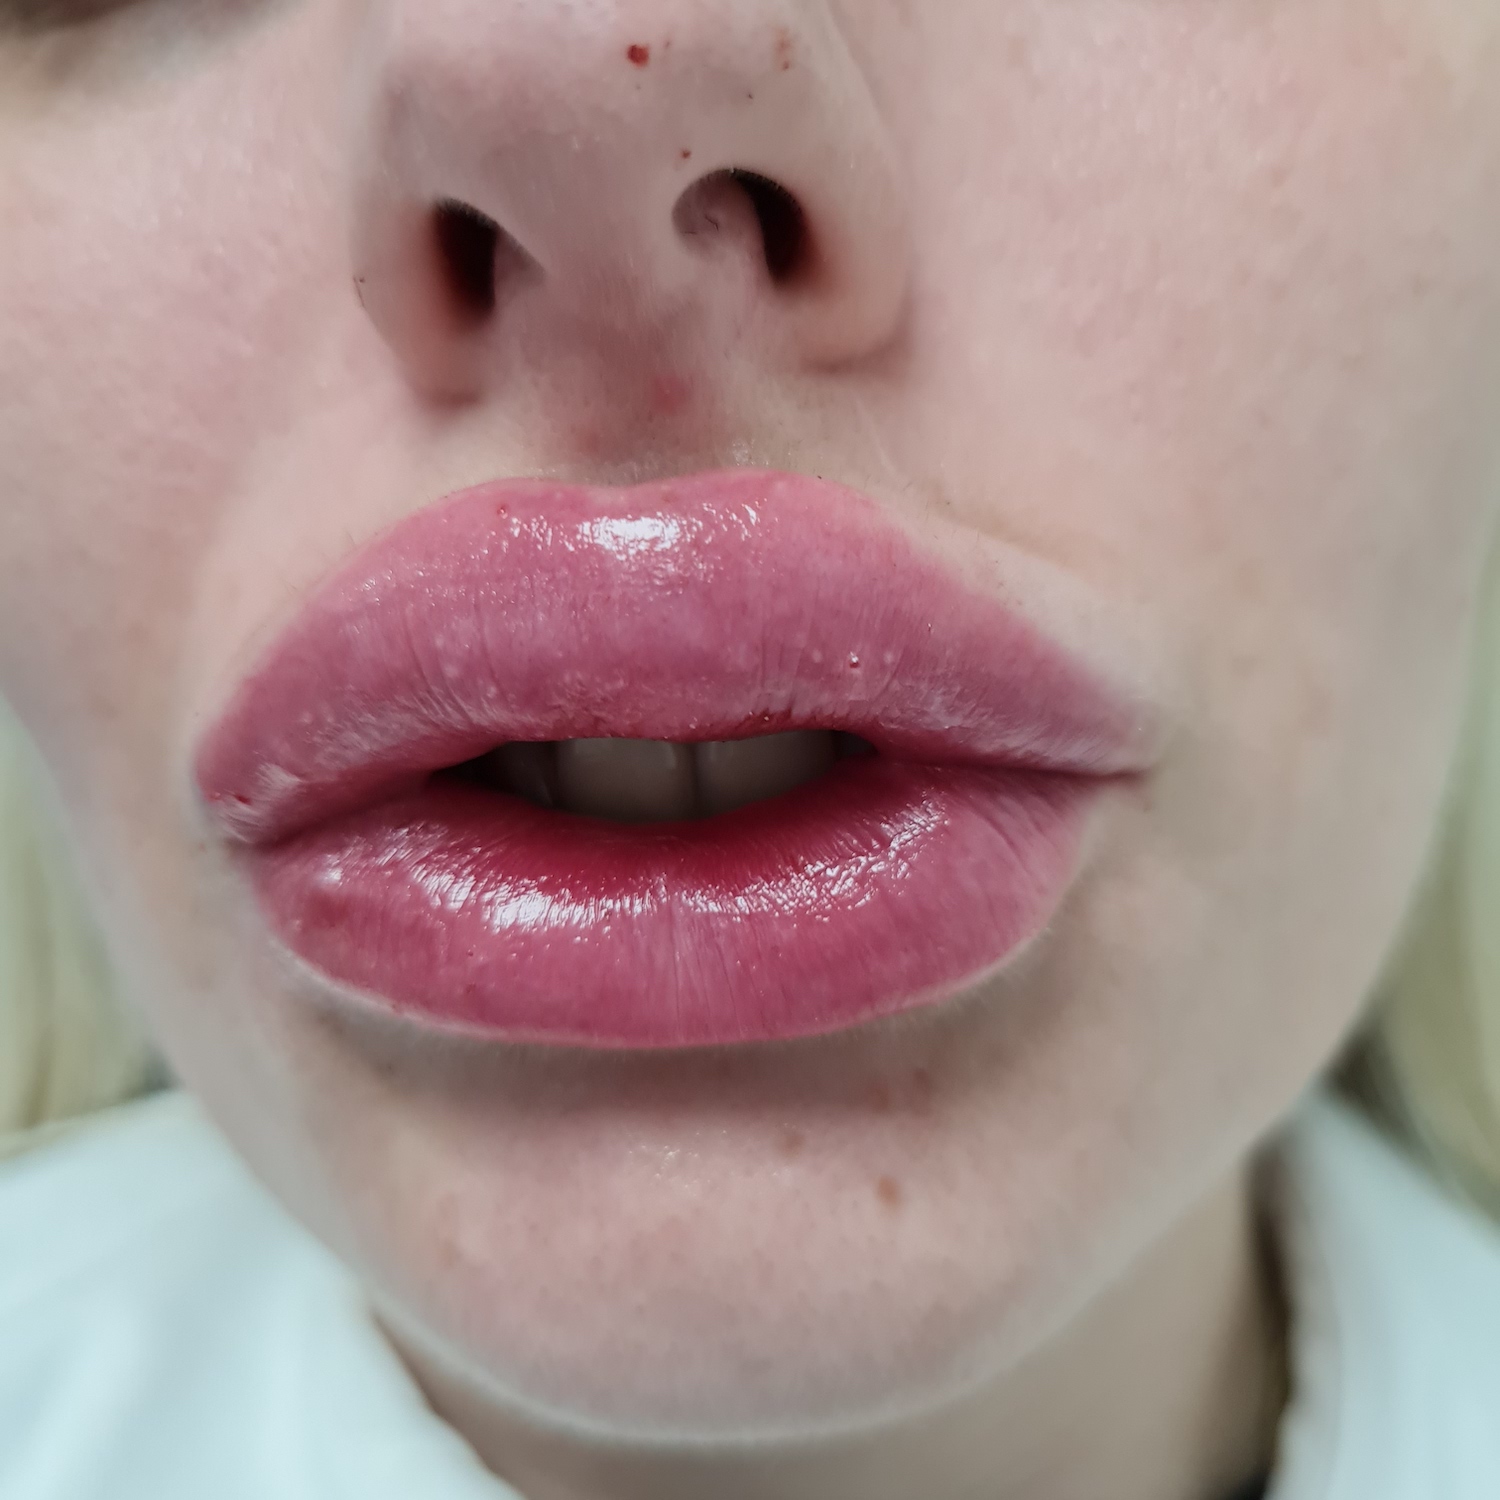 Pacijent br.1: Aplikovanje hijaluronskih filera u usne